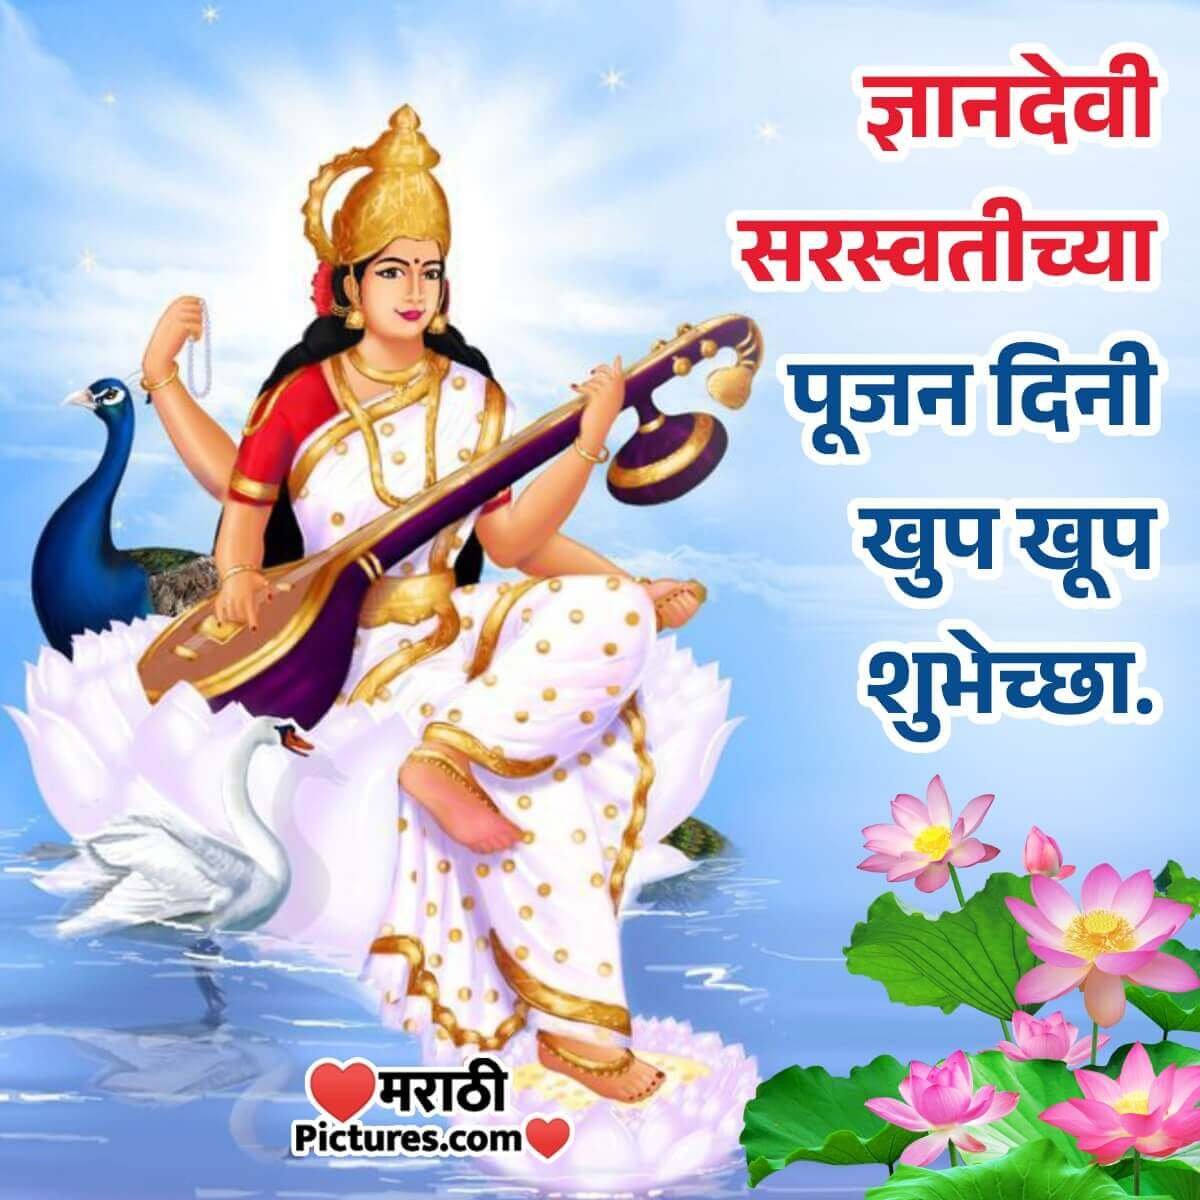 Happy Saraswati Pujan Wish Pic